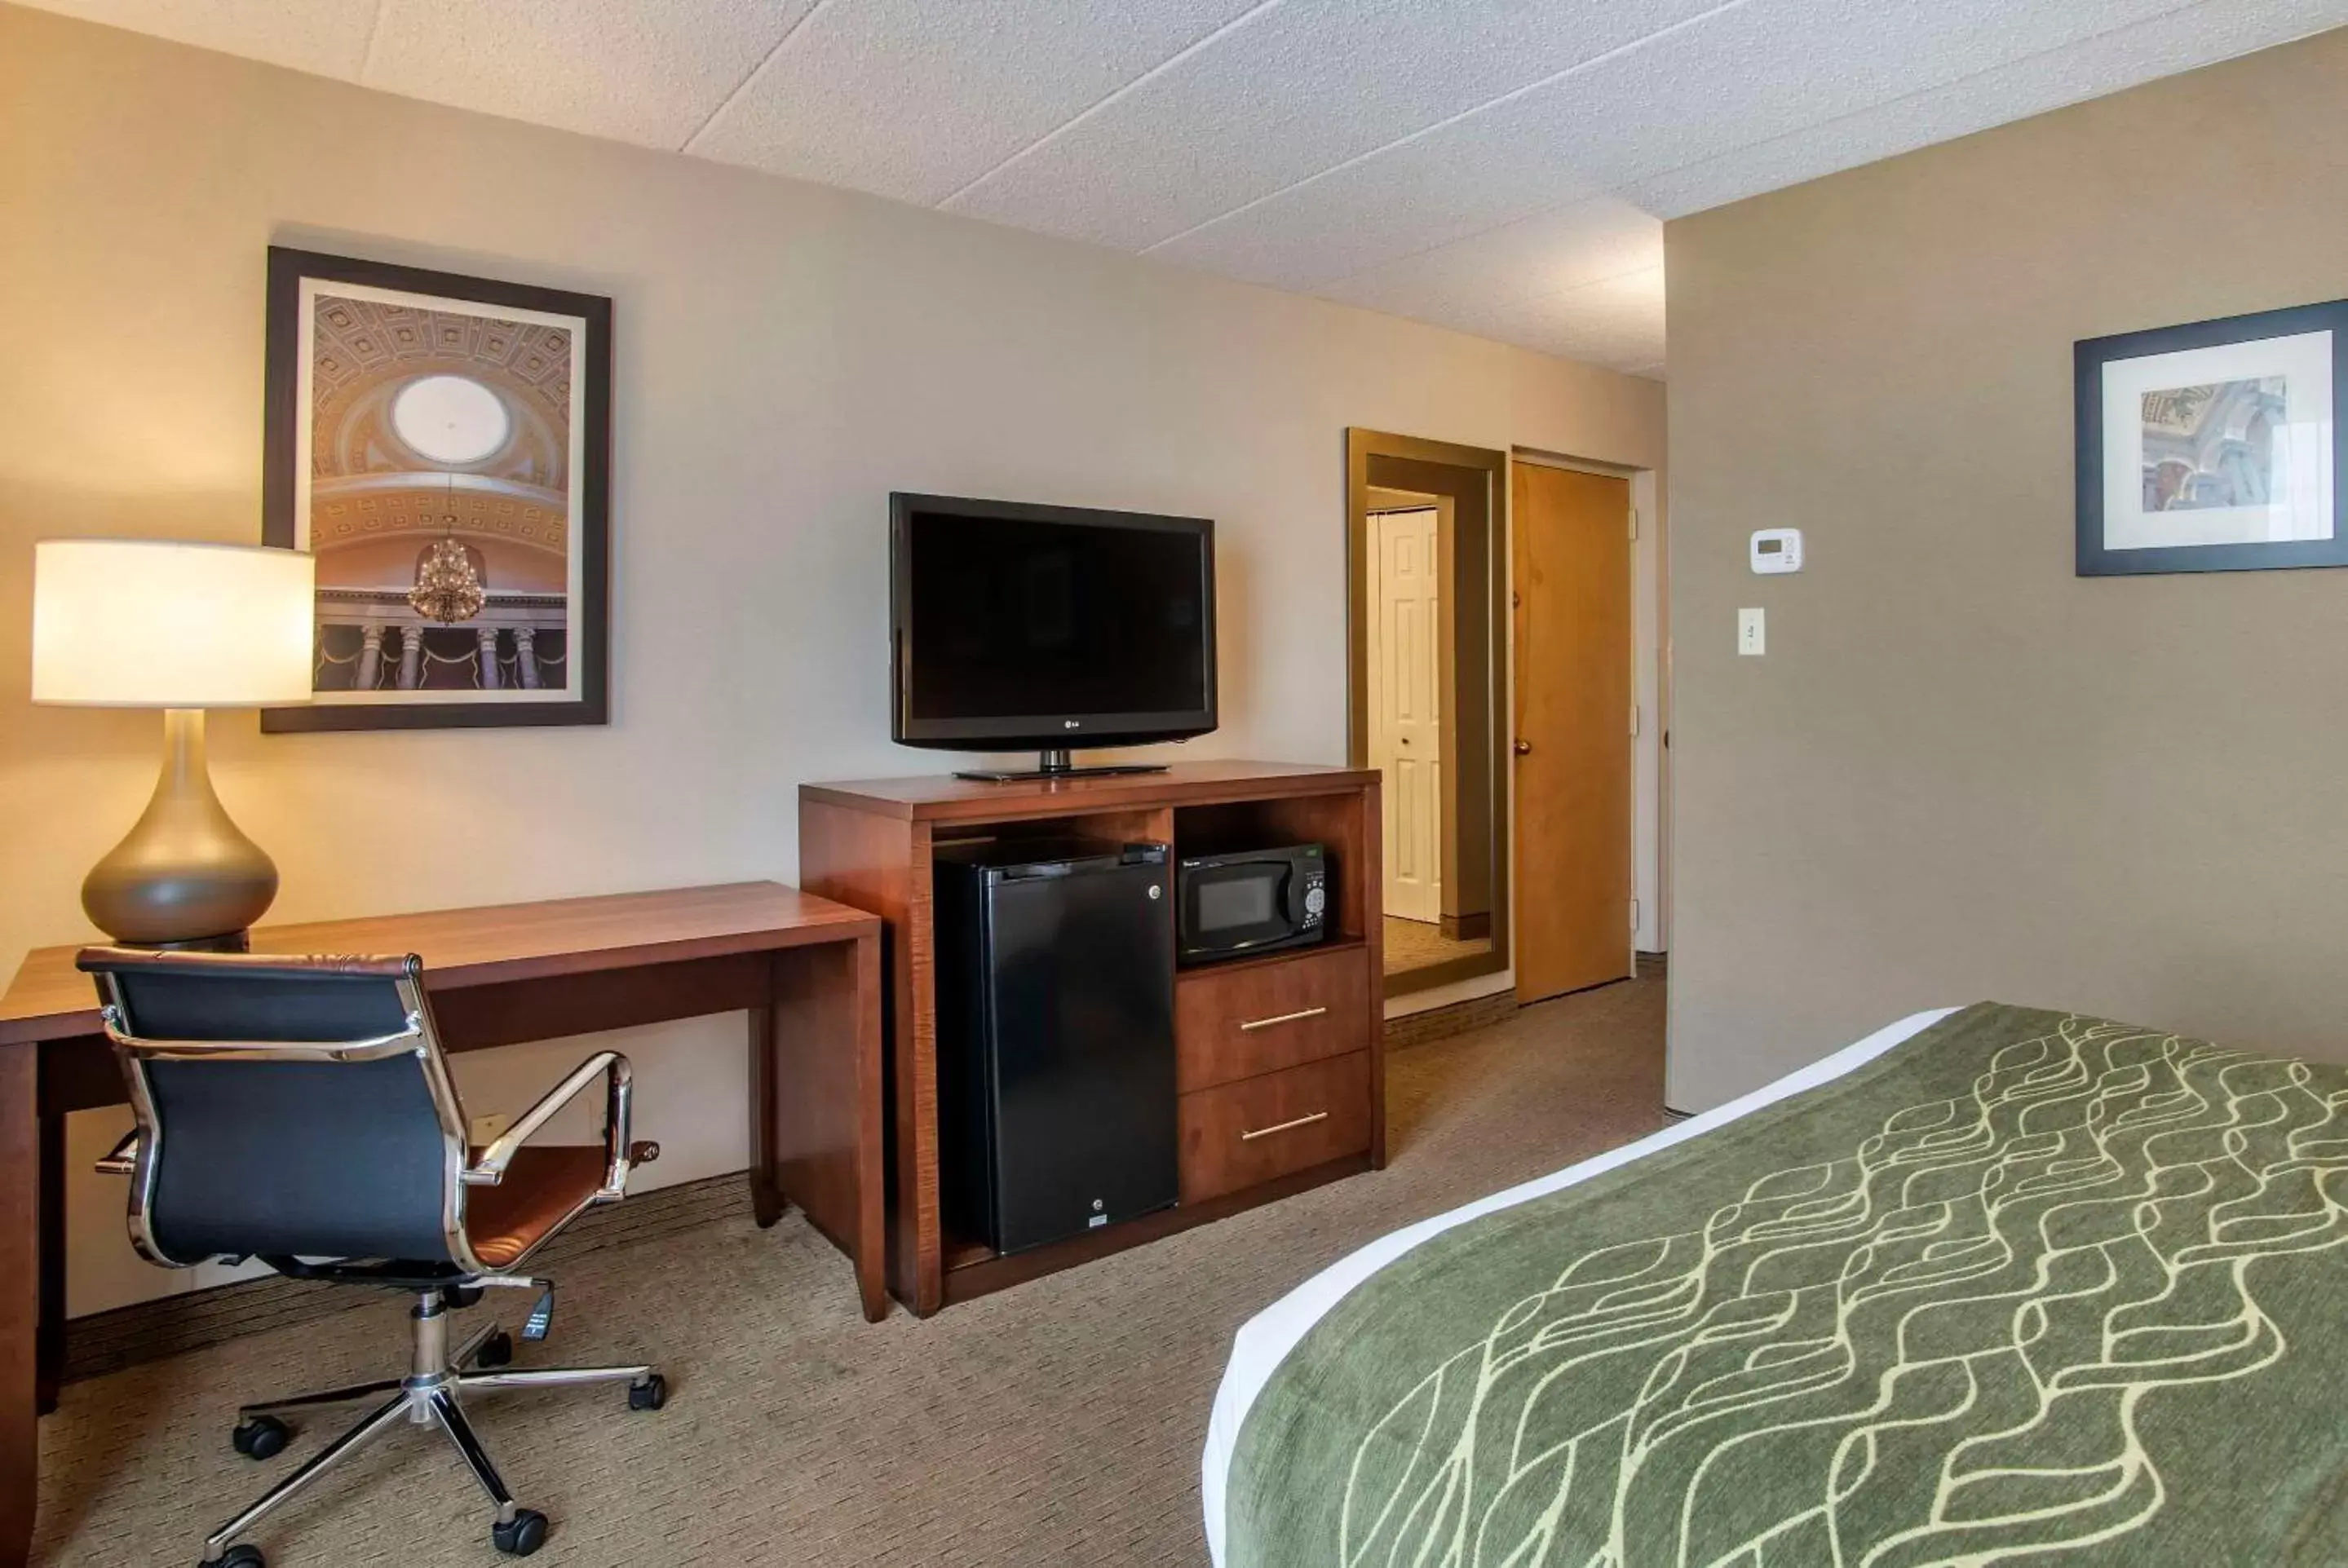 Bedroom, TV/Entertainment Center in Comfort Inn Shady Grove - Gaithersburg - Rockville